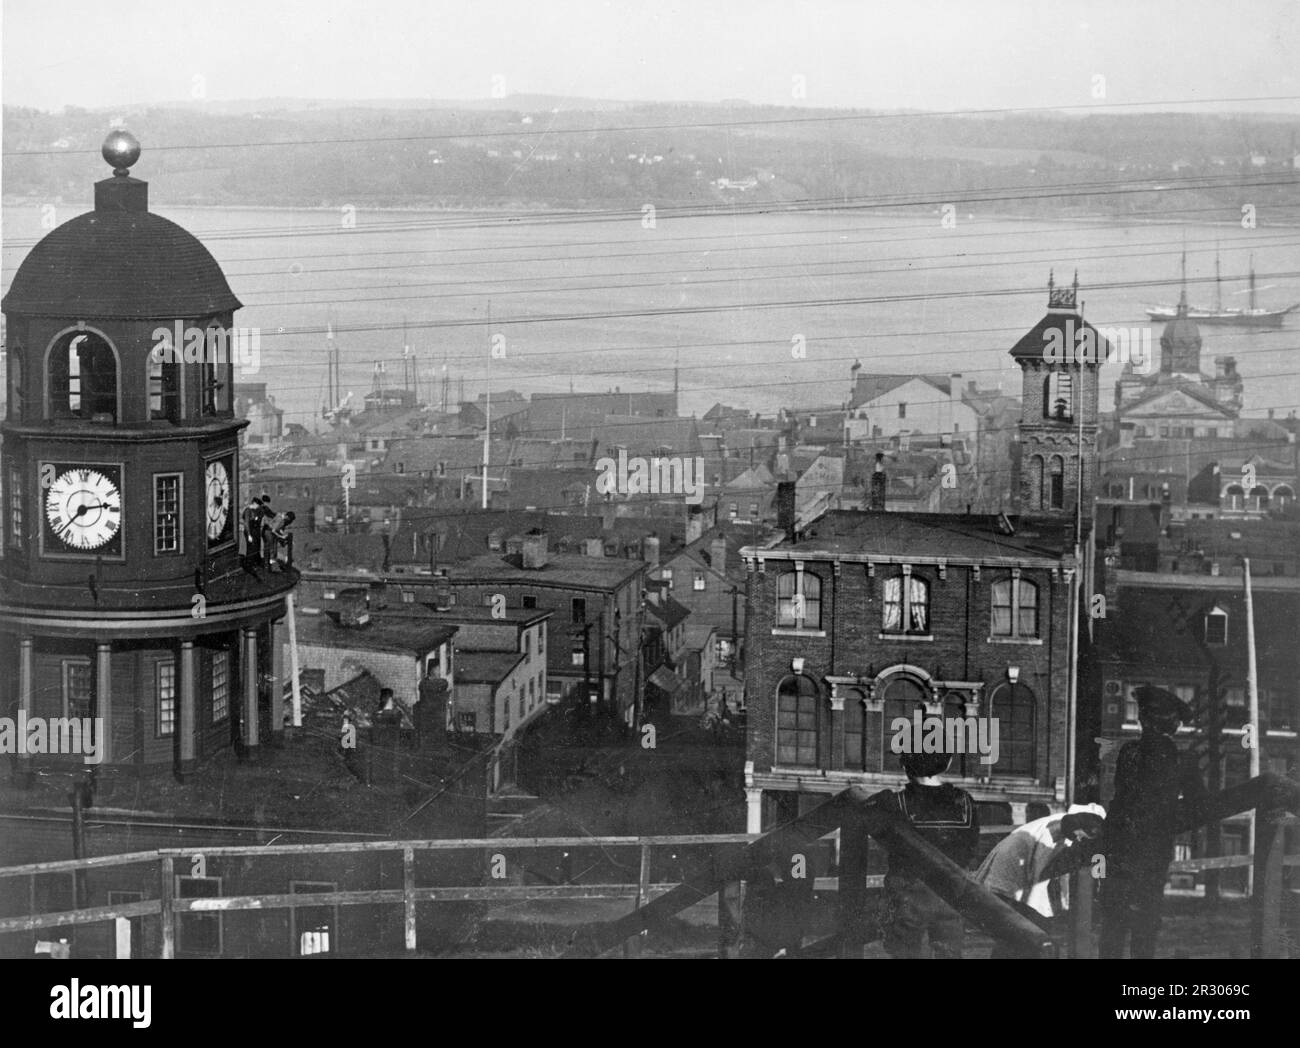 Fotografia vintage in bianco e nero del porto di Halifax, Nuova Scozia, dove le vittime del naufragio del Titanic furono prese sulla nave Mackay-Bennett nel 1912 Foto Stock